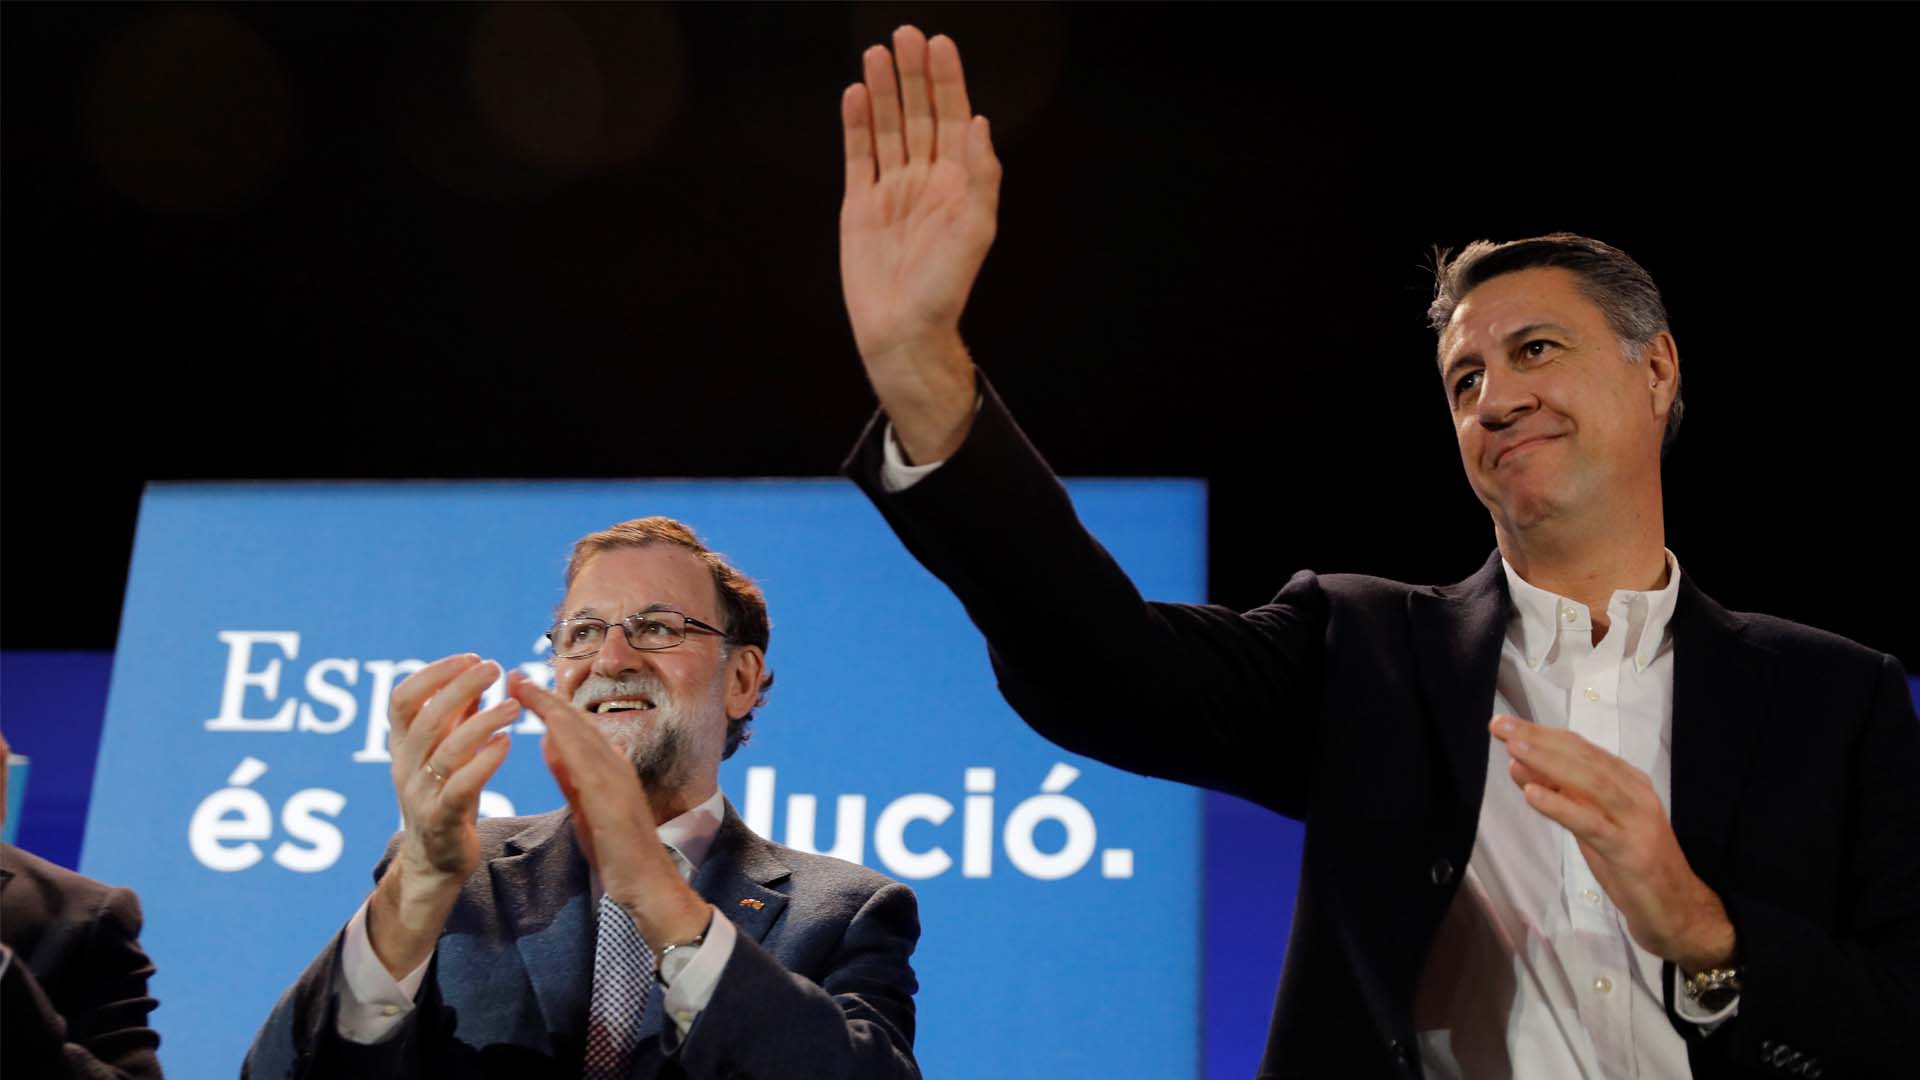 El PP gana un escaño a Ciudadanos en Tarragona en el escrutinio del voto exterior